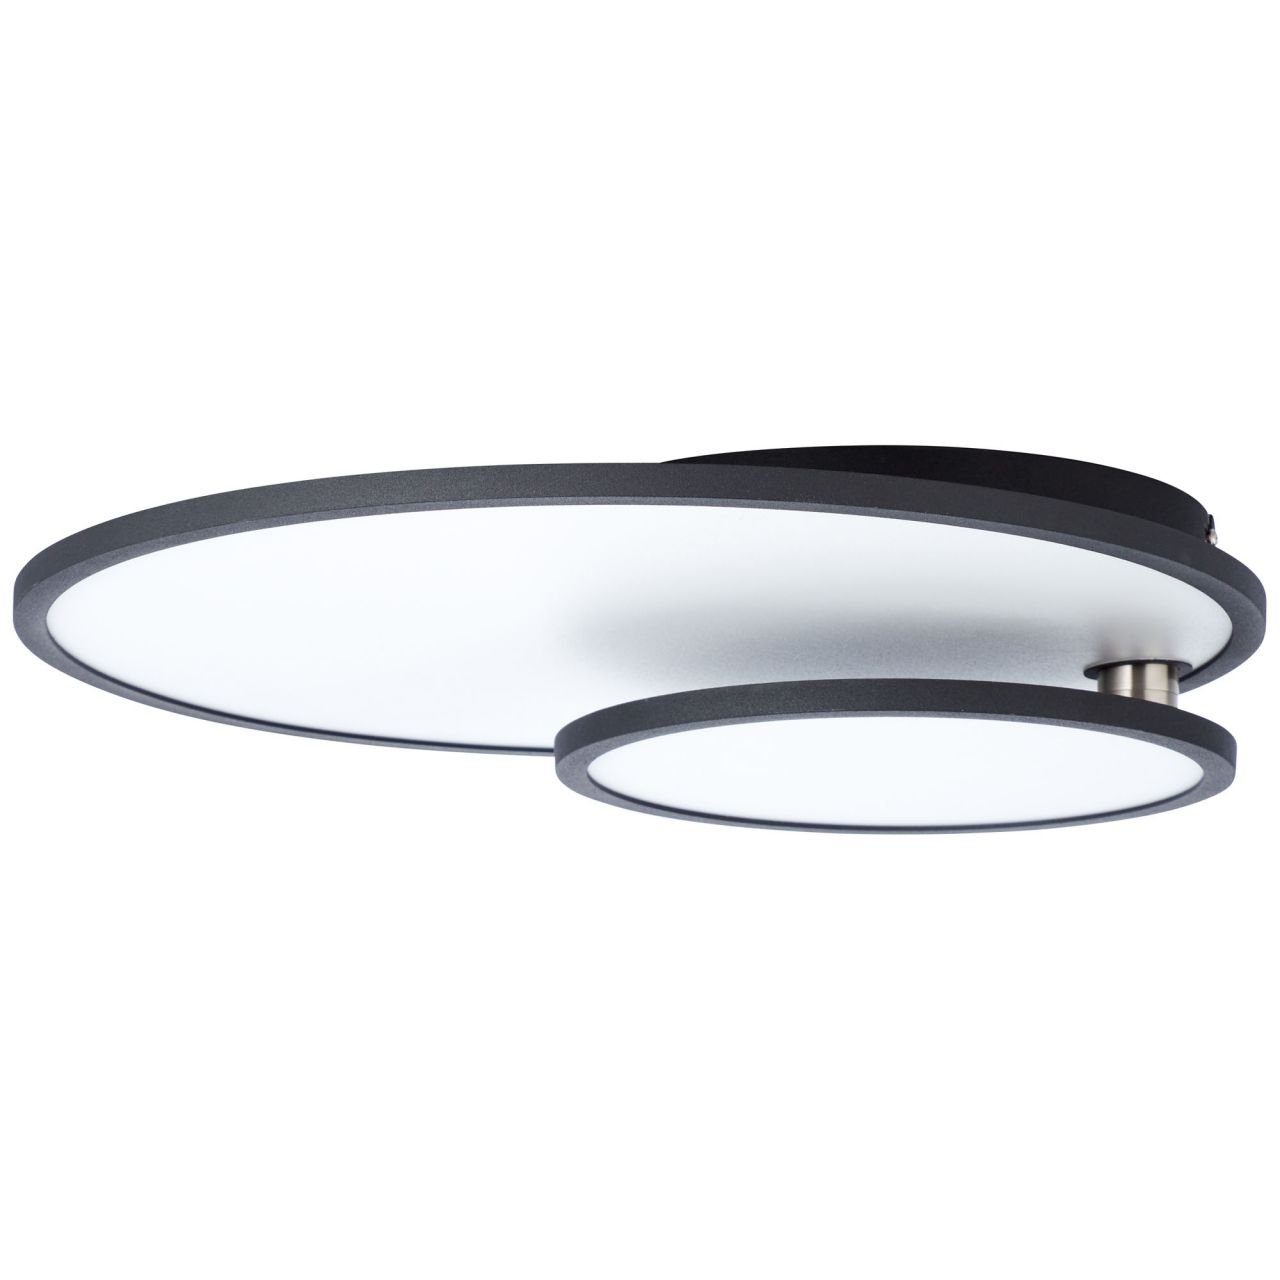 Bility Aufbauleuchte LED schwarz/weiß Deckenaufbau-Paneel 61x45cm 3000K, easyDim Brilliant Lampe Bility, 1x